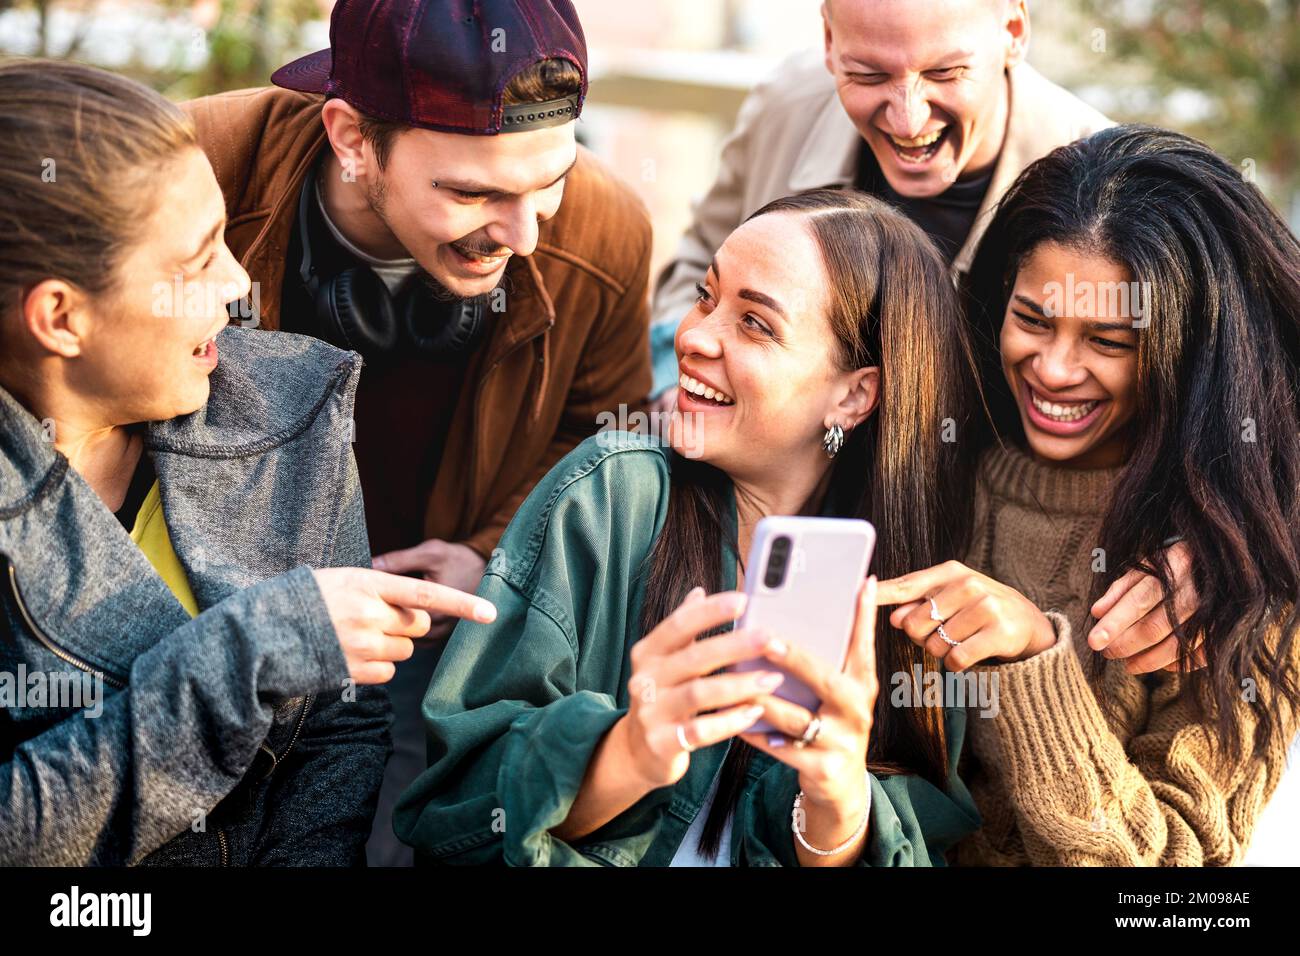 Multikulturelle junge Menschen, die im städtischen Hof Spaß mit ihrem Mobiltelefon haben – Happy boys and girls verbringt Zeit miteinander, um lustige Inhalte online zu teilen Stockfoto